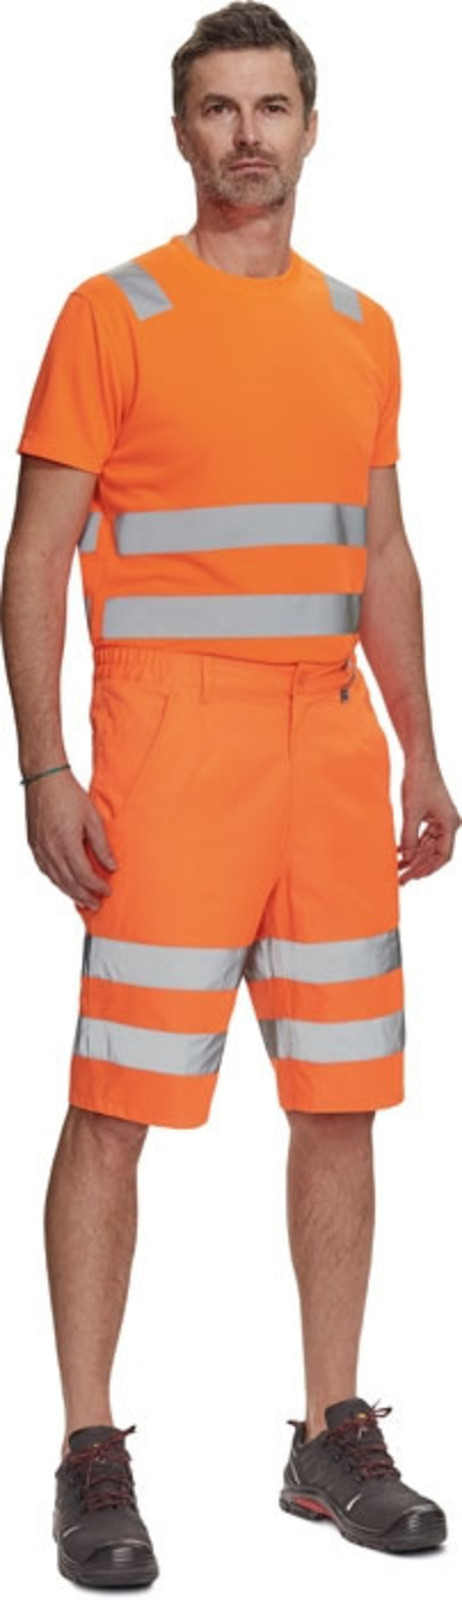 Pánske reflexné šortky Cerva Ciudades Ferrol HV - veľkosť: 56, farba: oranžová